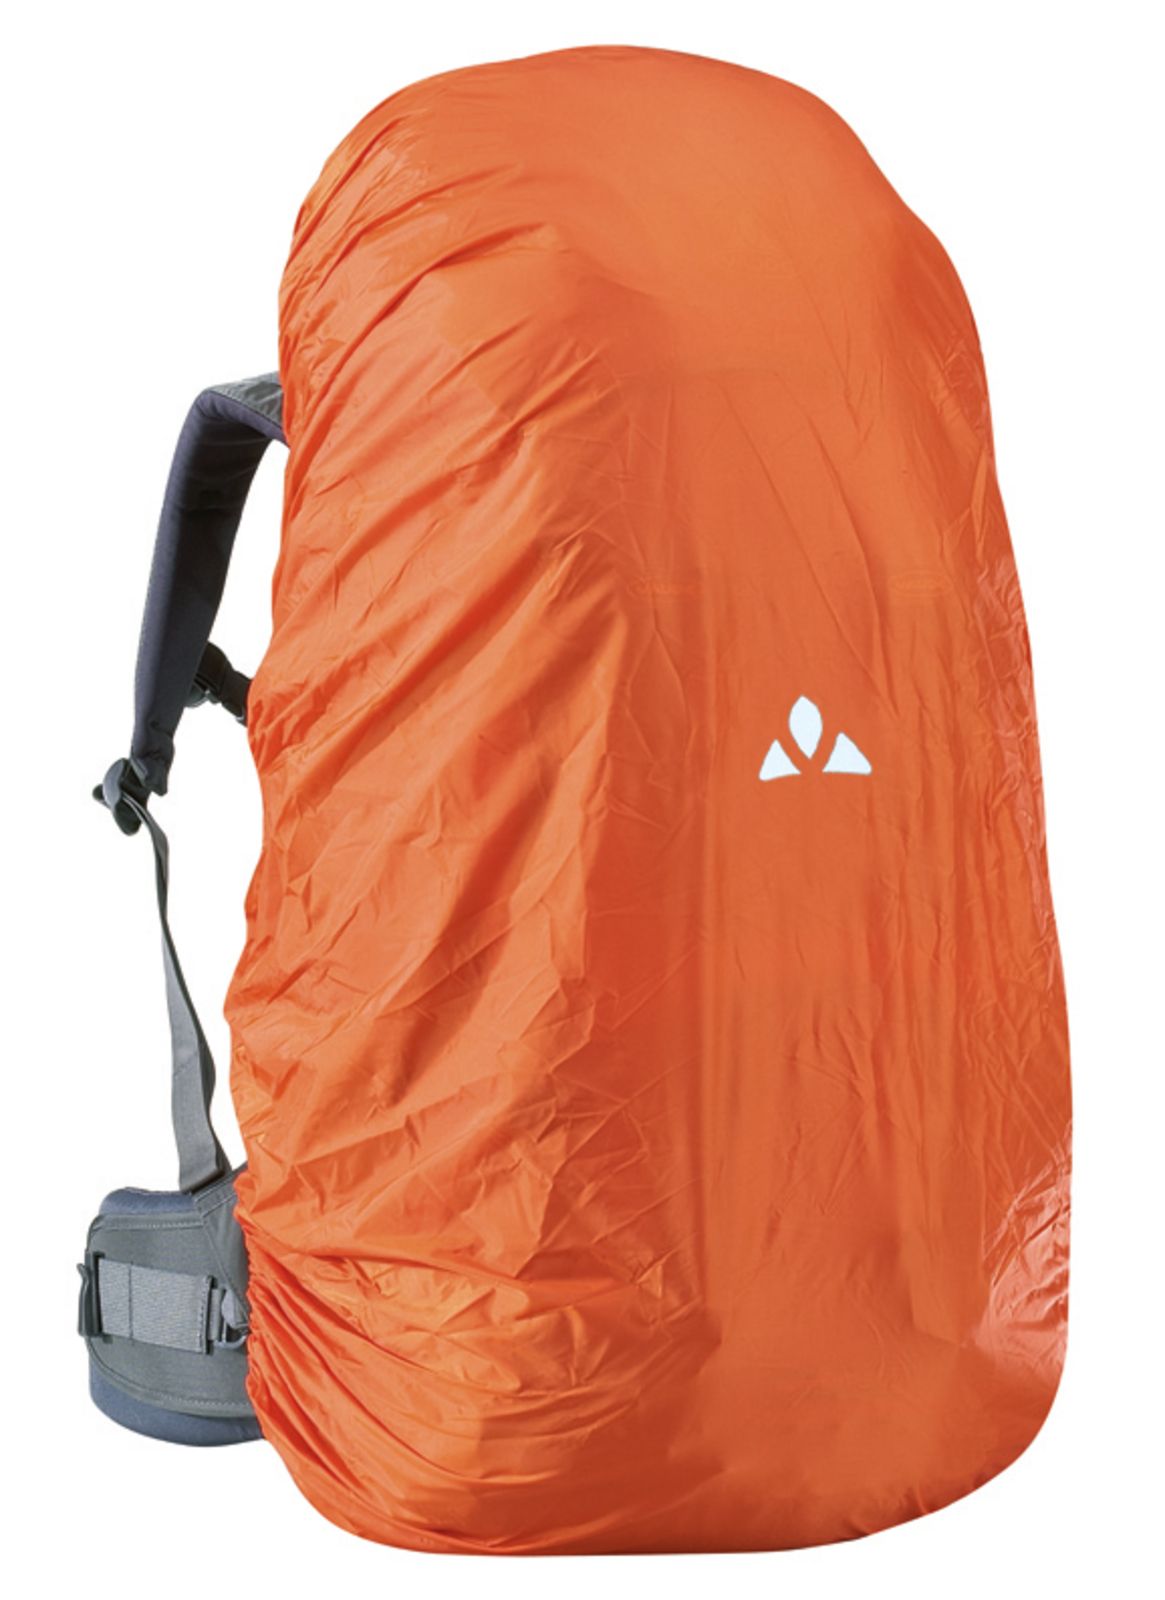 Raincover for backpacks 15-30 l